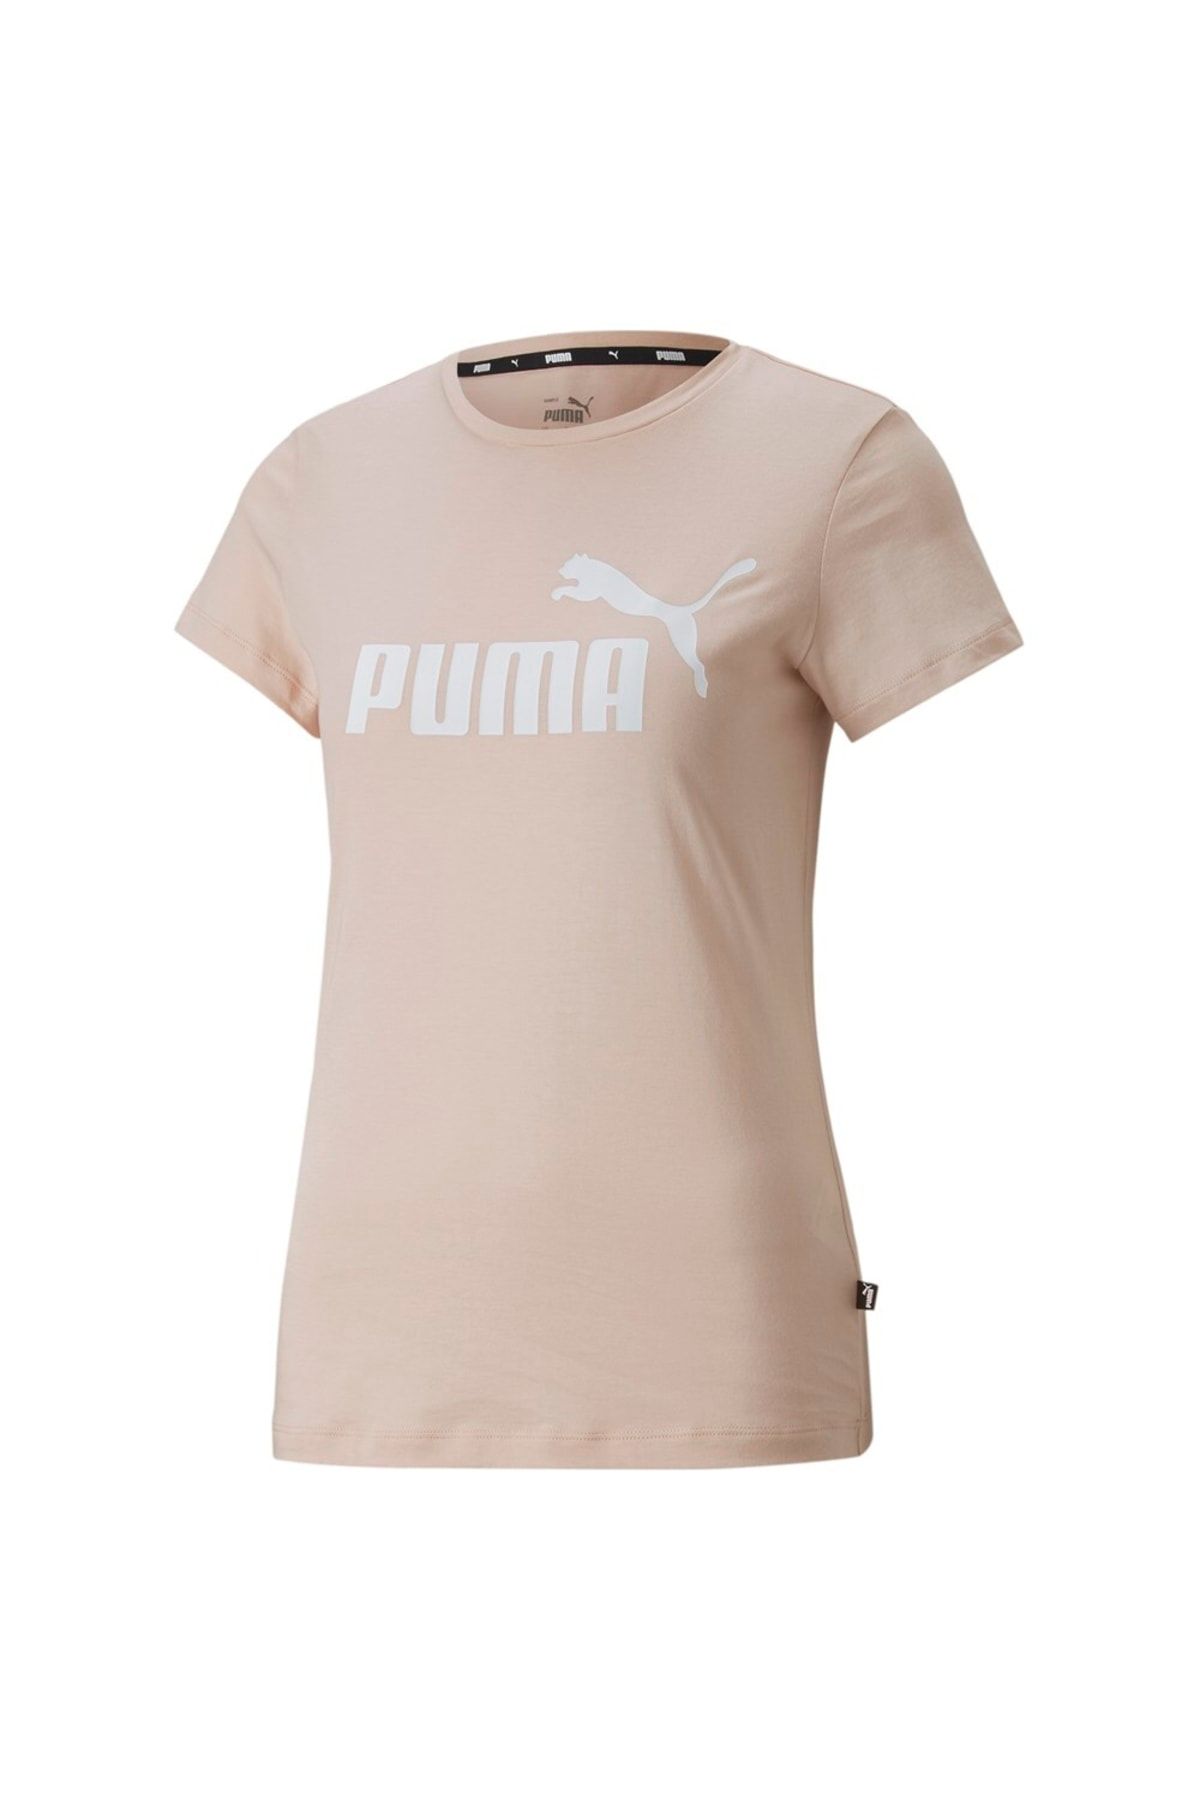 Puma Ess Logo Tee (s)